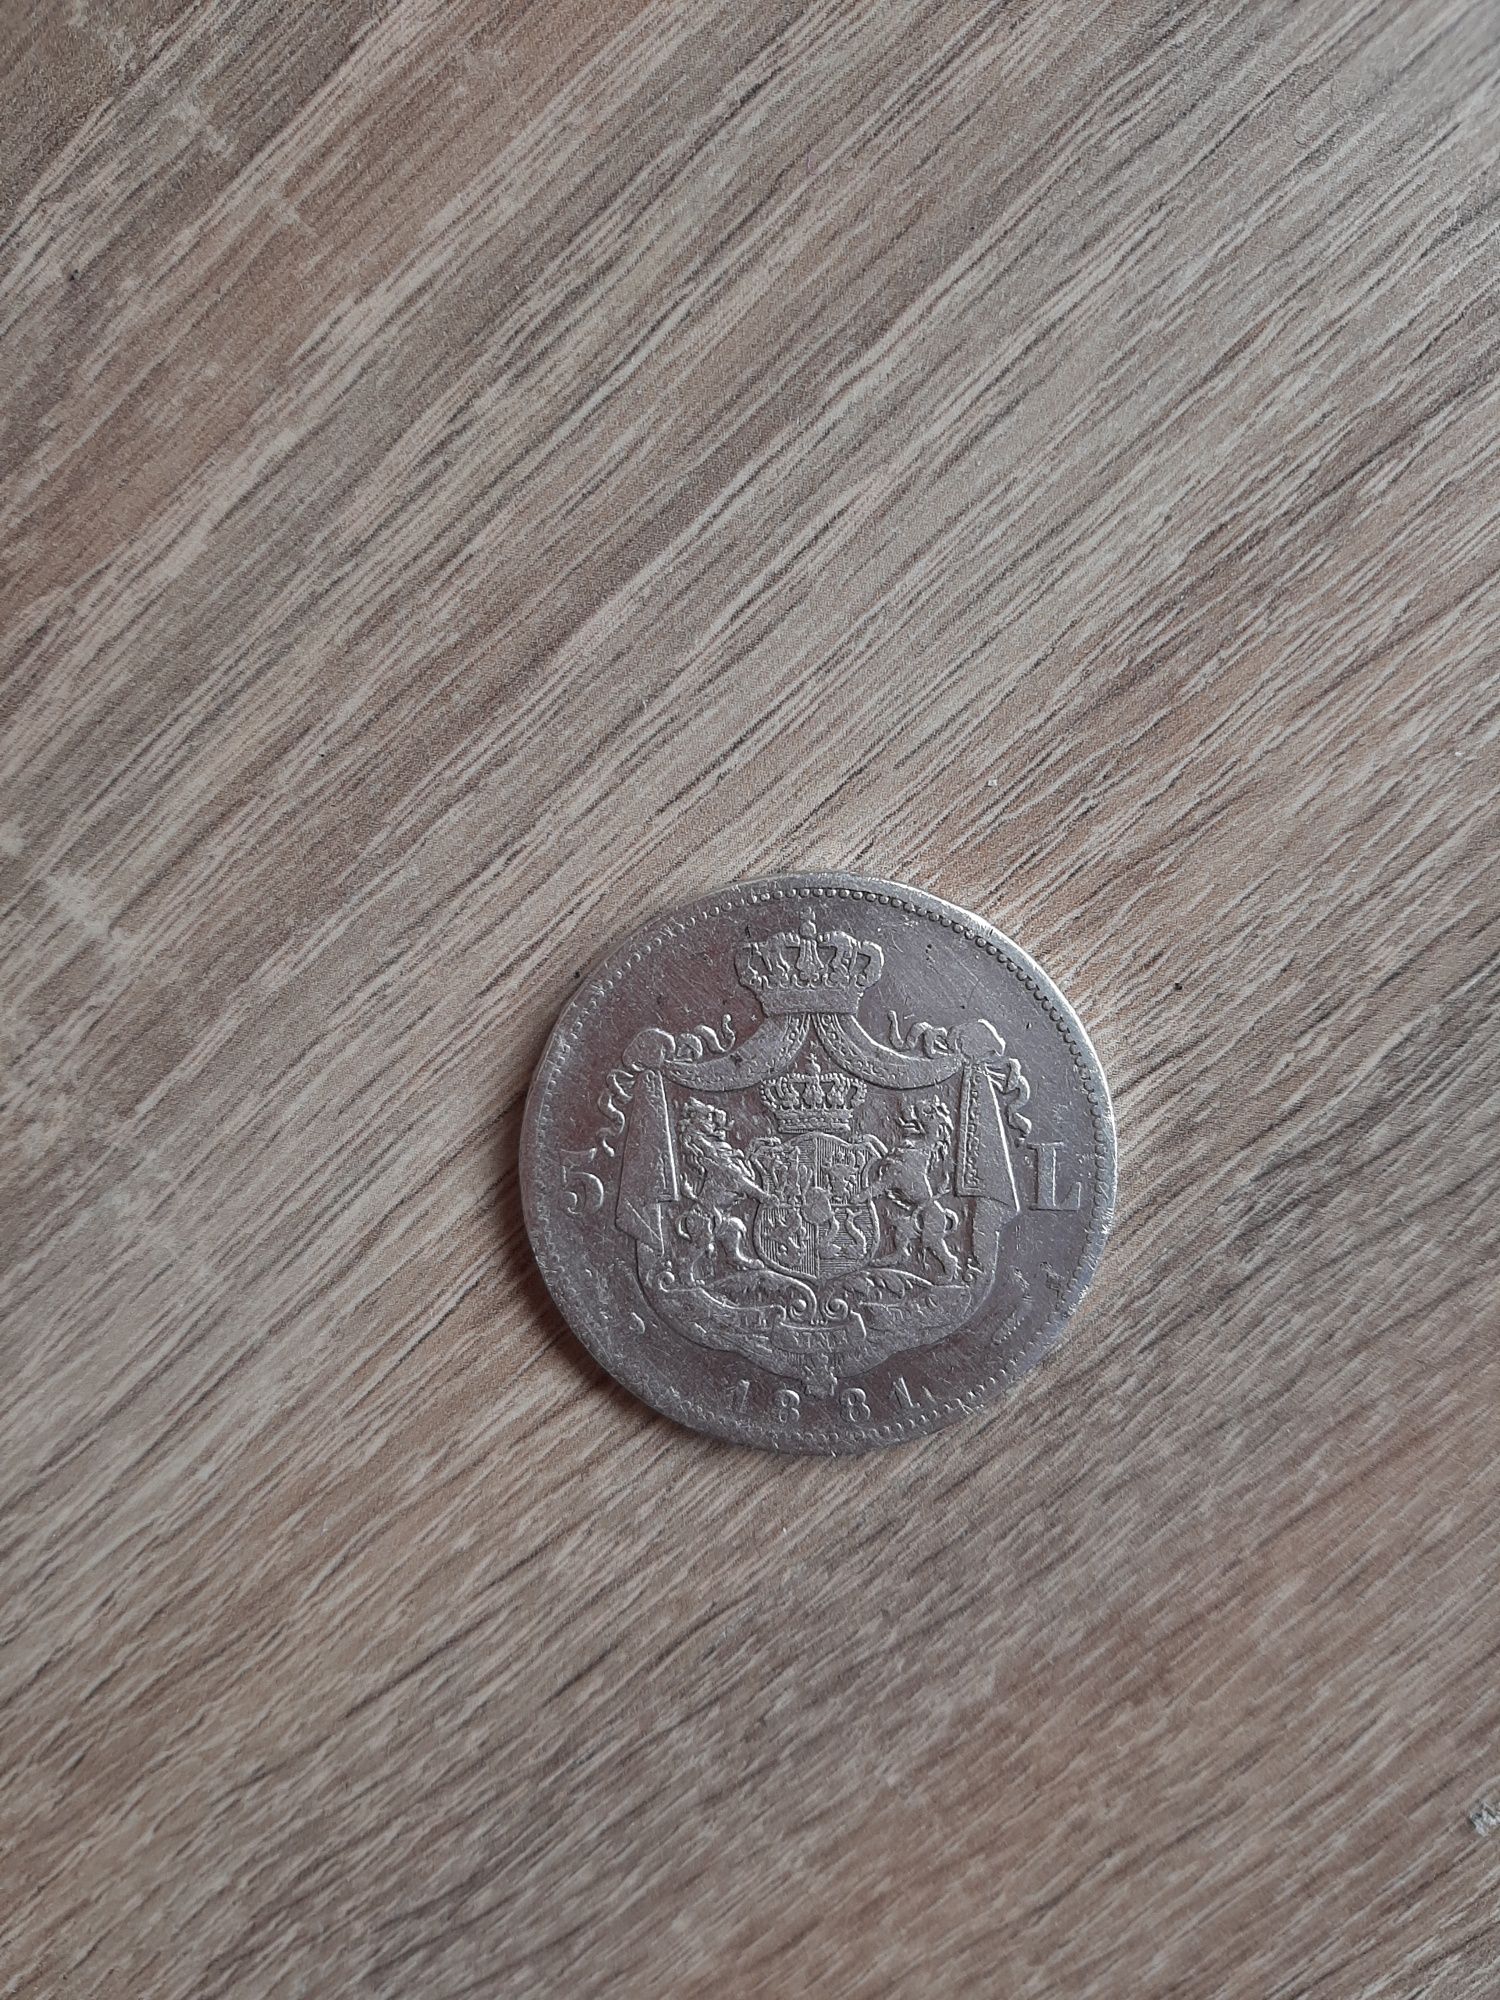 5 lei 1881 argint